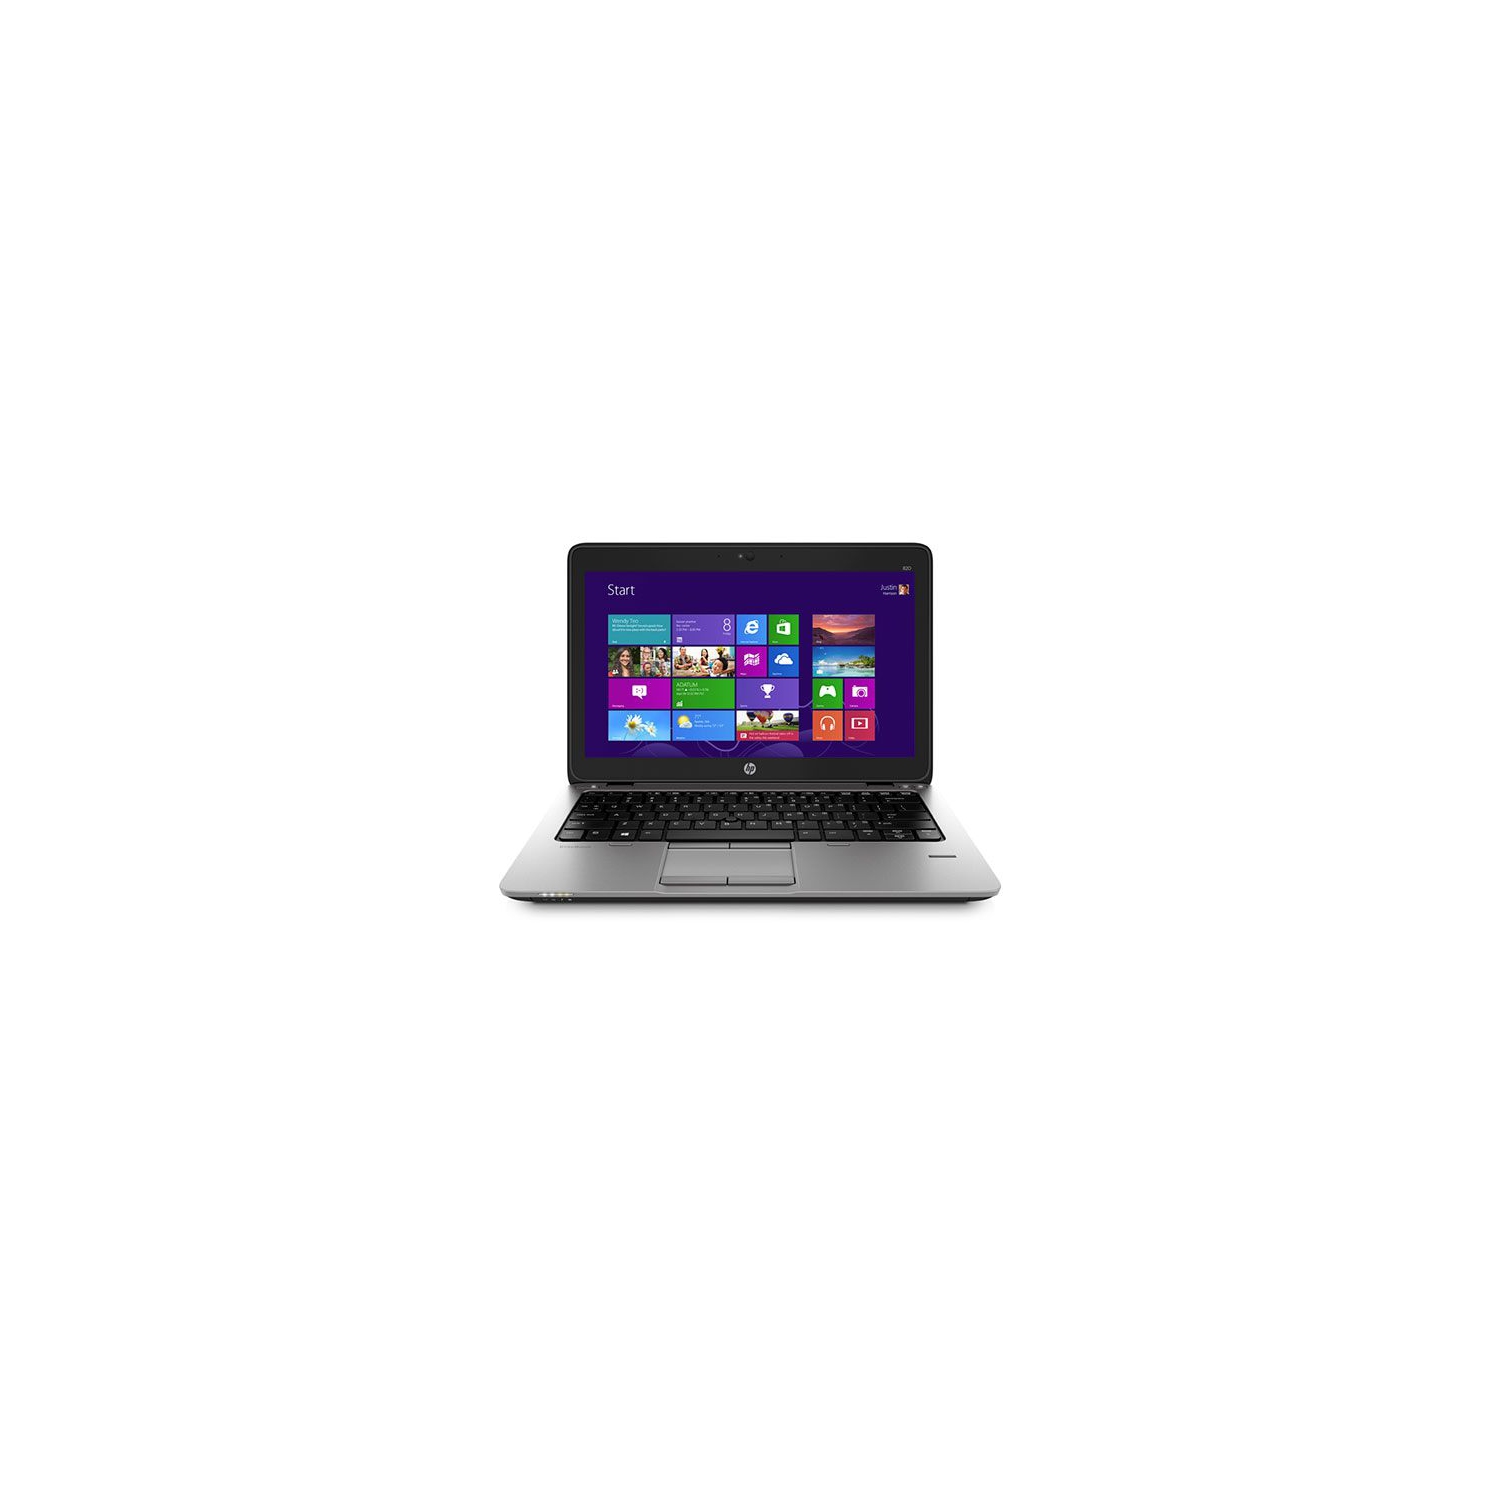 Refurbished (Good) - HP EliteBook 820 G3 12.5" Screen-Intel Core i5-6300U - 8GB DDR4 - DUAL DRIVES-FAST 256 GB M.2 SSD + 500 GB HDD ,WIN. 10 Pro